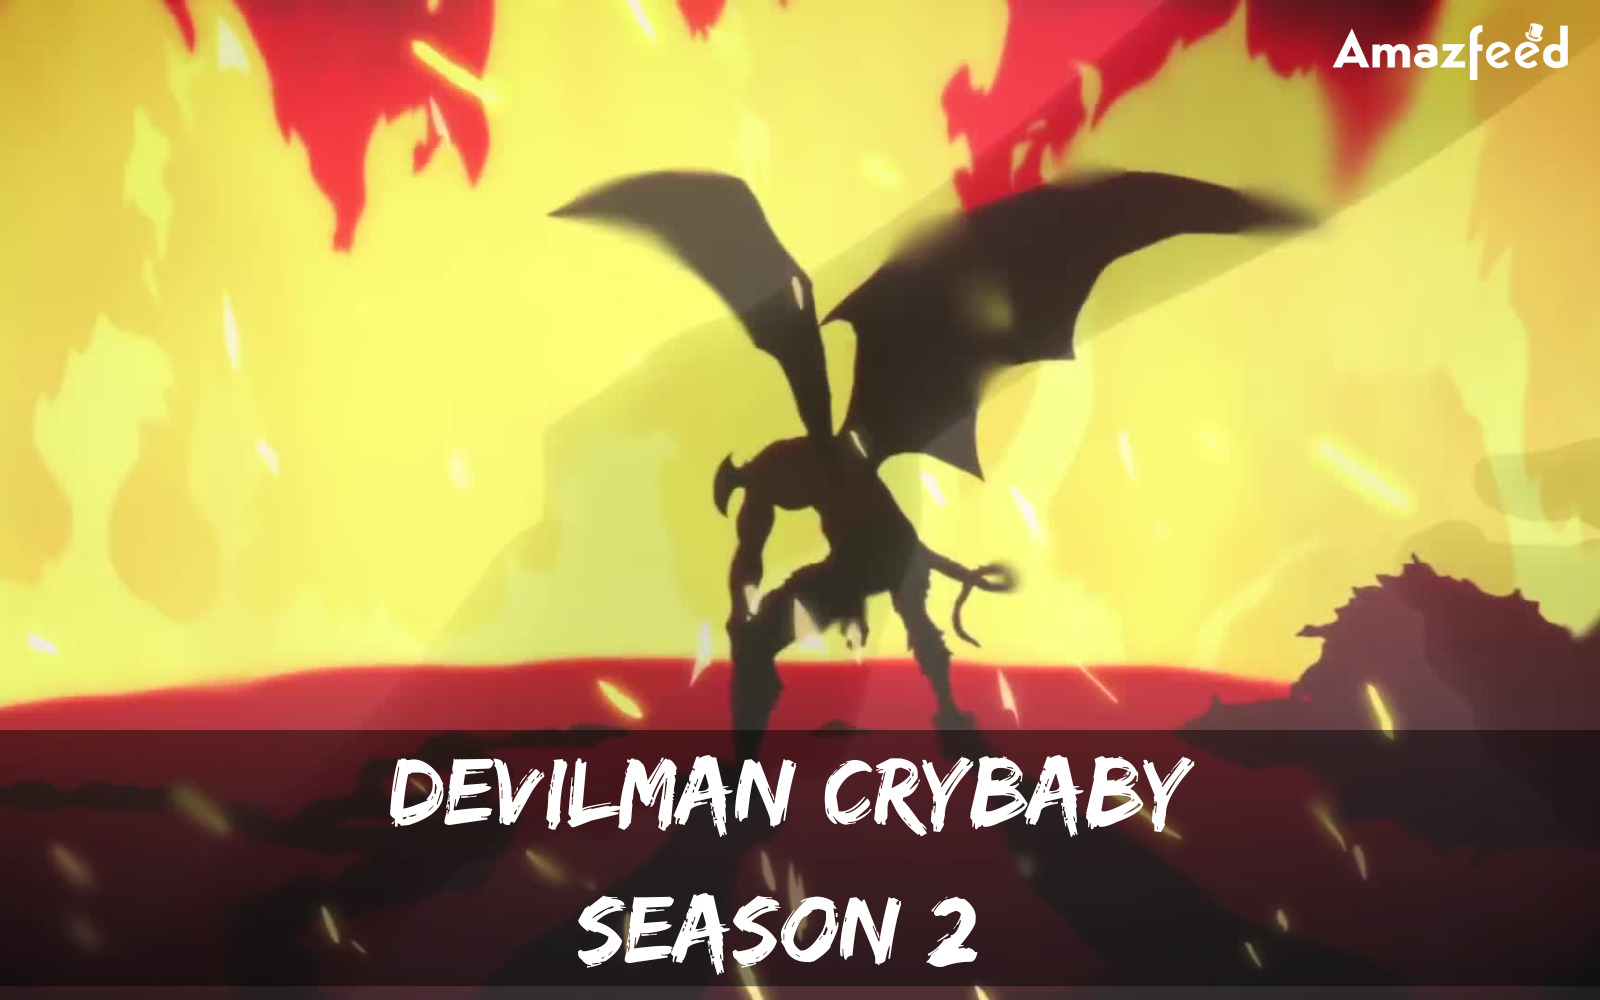 Devilman Crybaby Season 2 Parental Guide